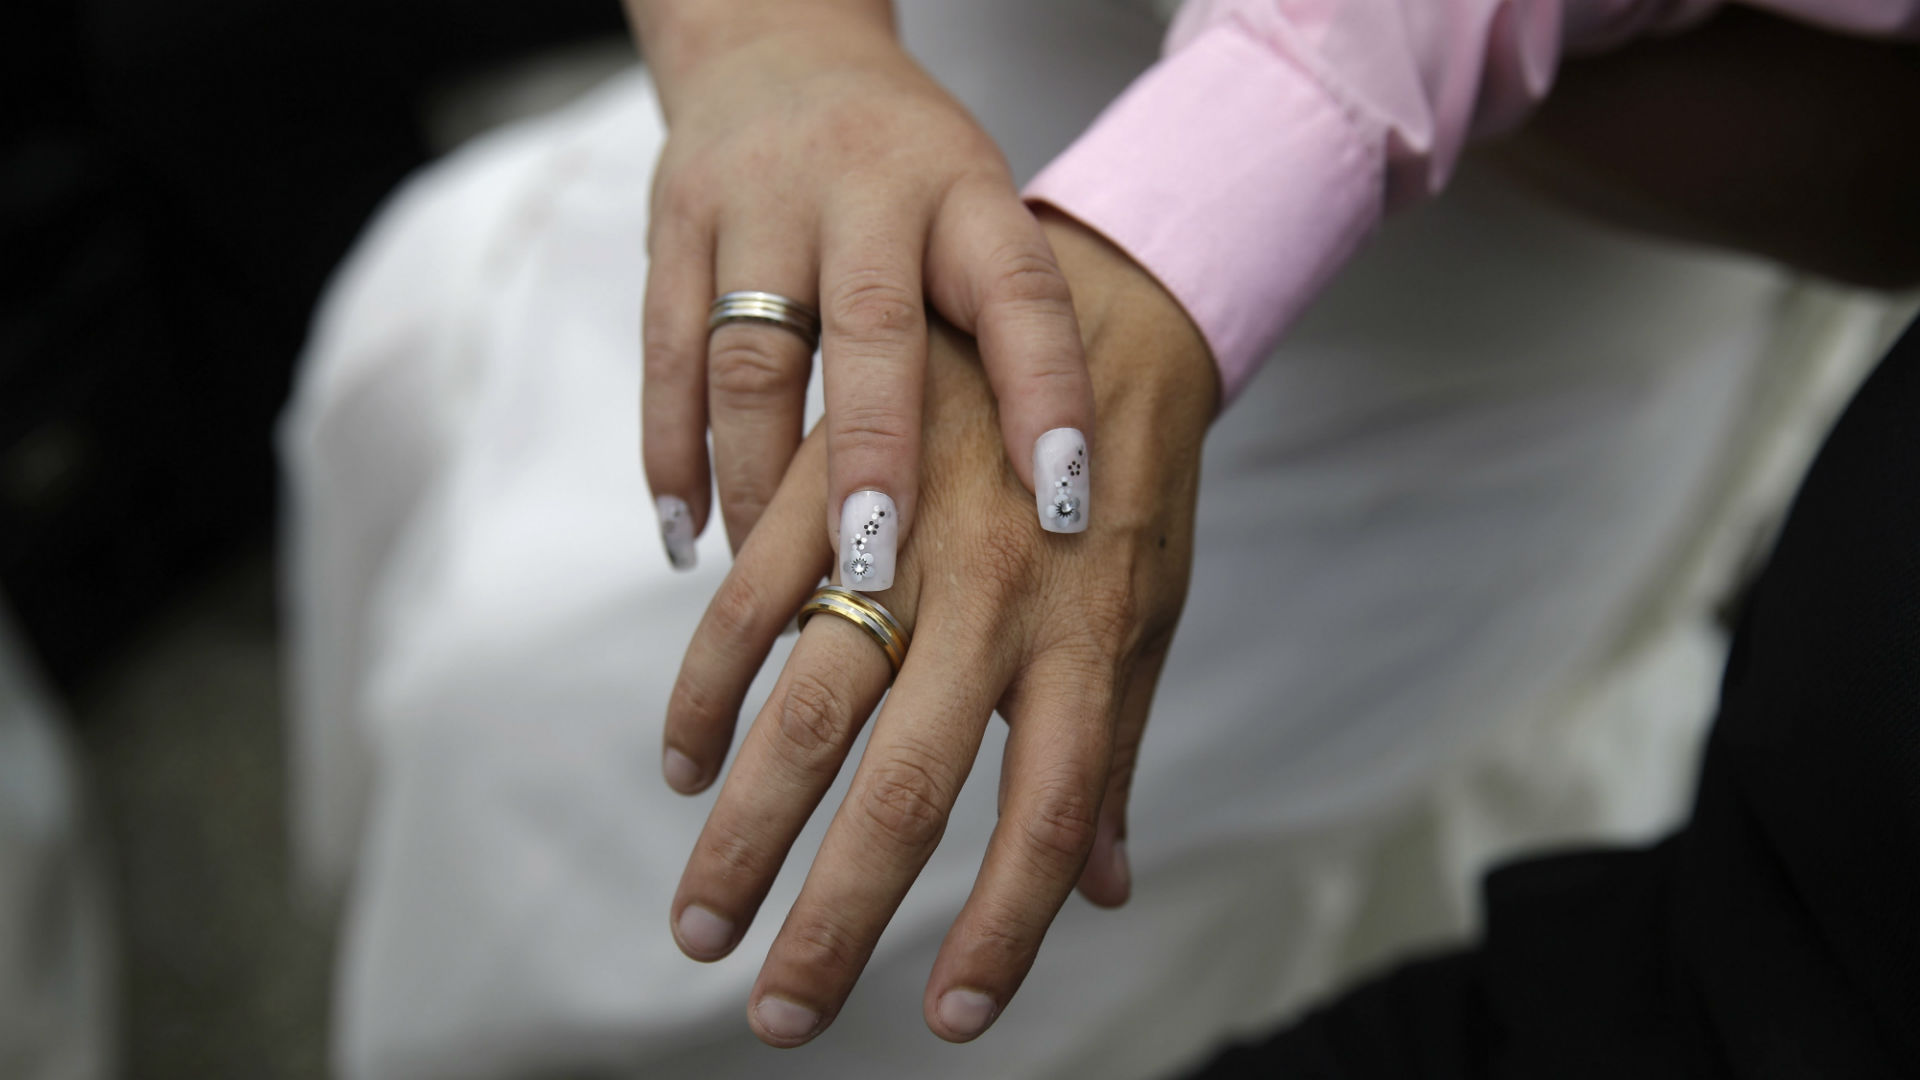 Dos mujeres transexuales contraen matrimonio por primera vez en Argentina